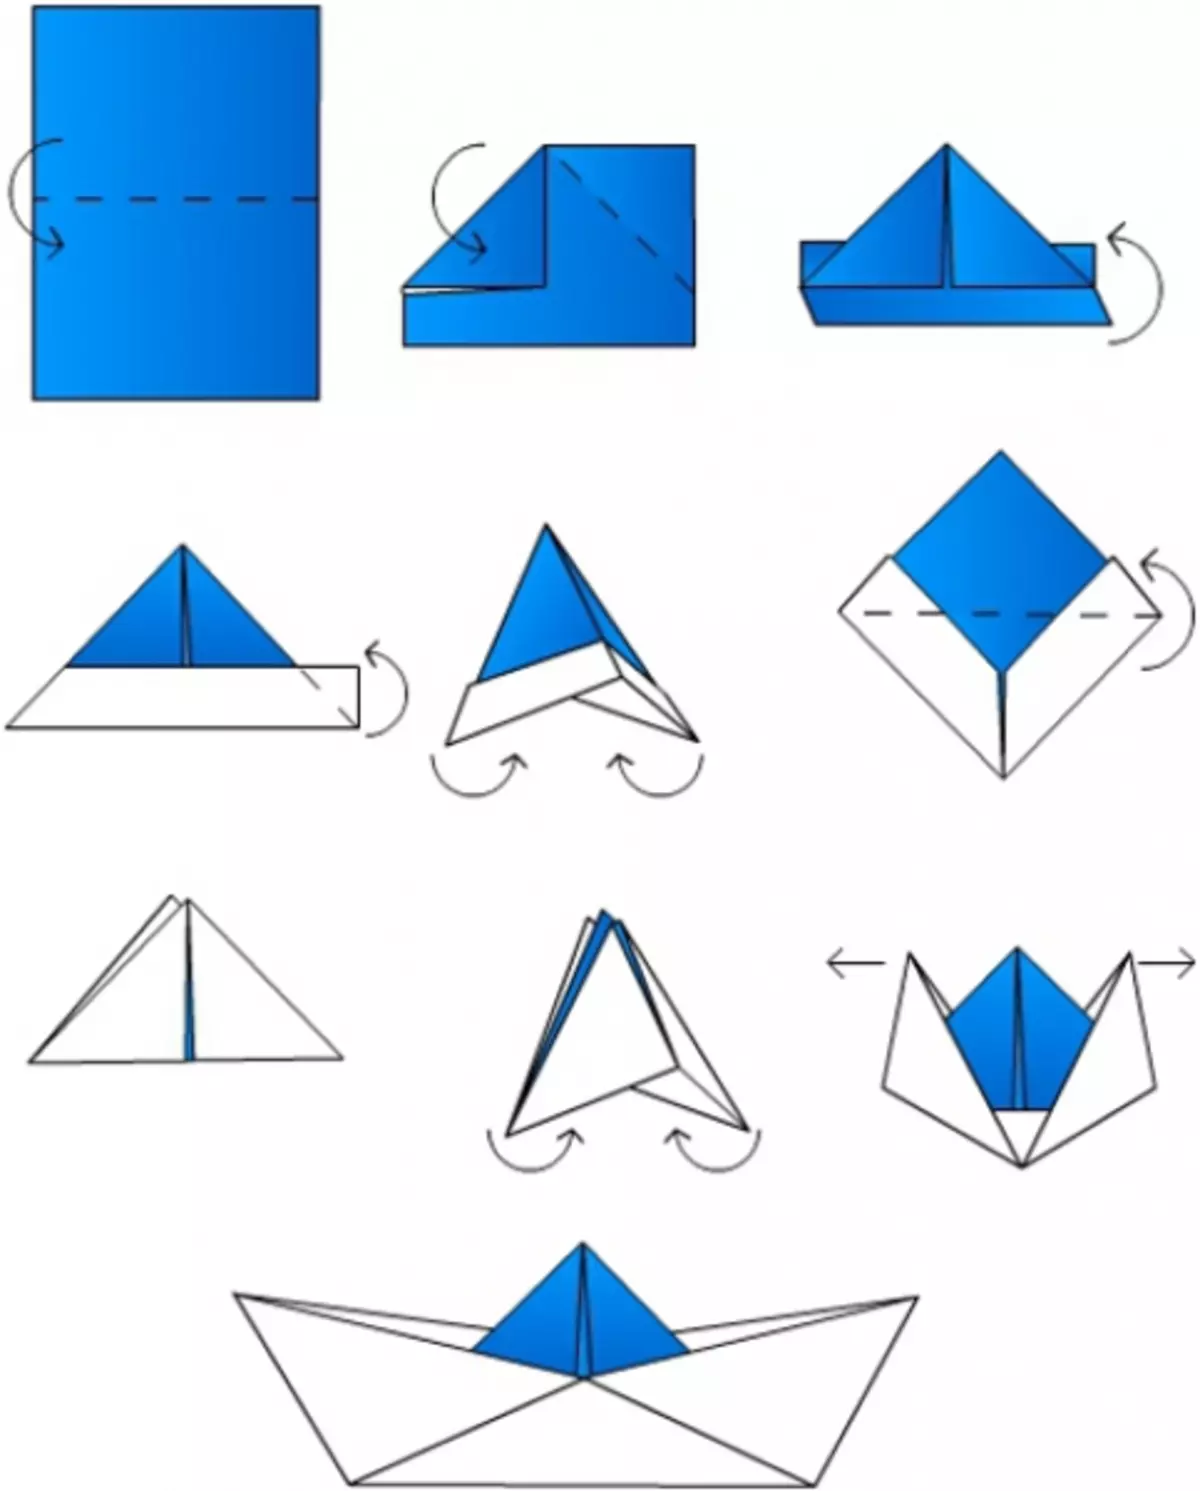 Схема бумажного кораблика. Схема как сделать кораблик из бумаги. Кораблик оригами из бумаги для детей схема простая. Бумажный кораблик схема складывания. Как делать кораблик из бумаги а4.